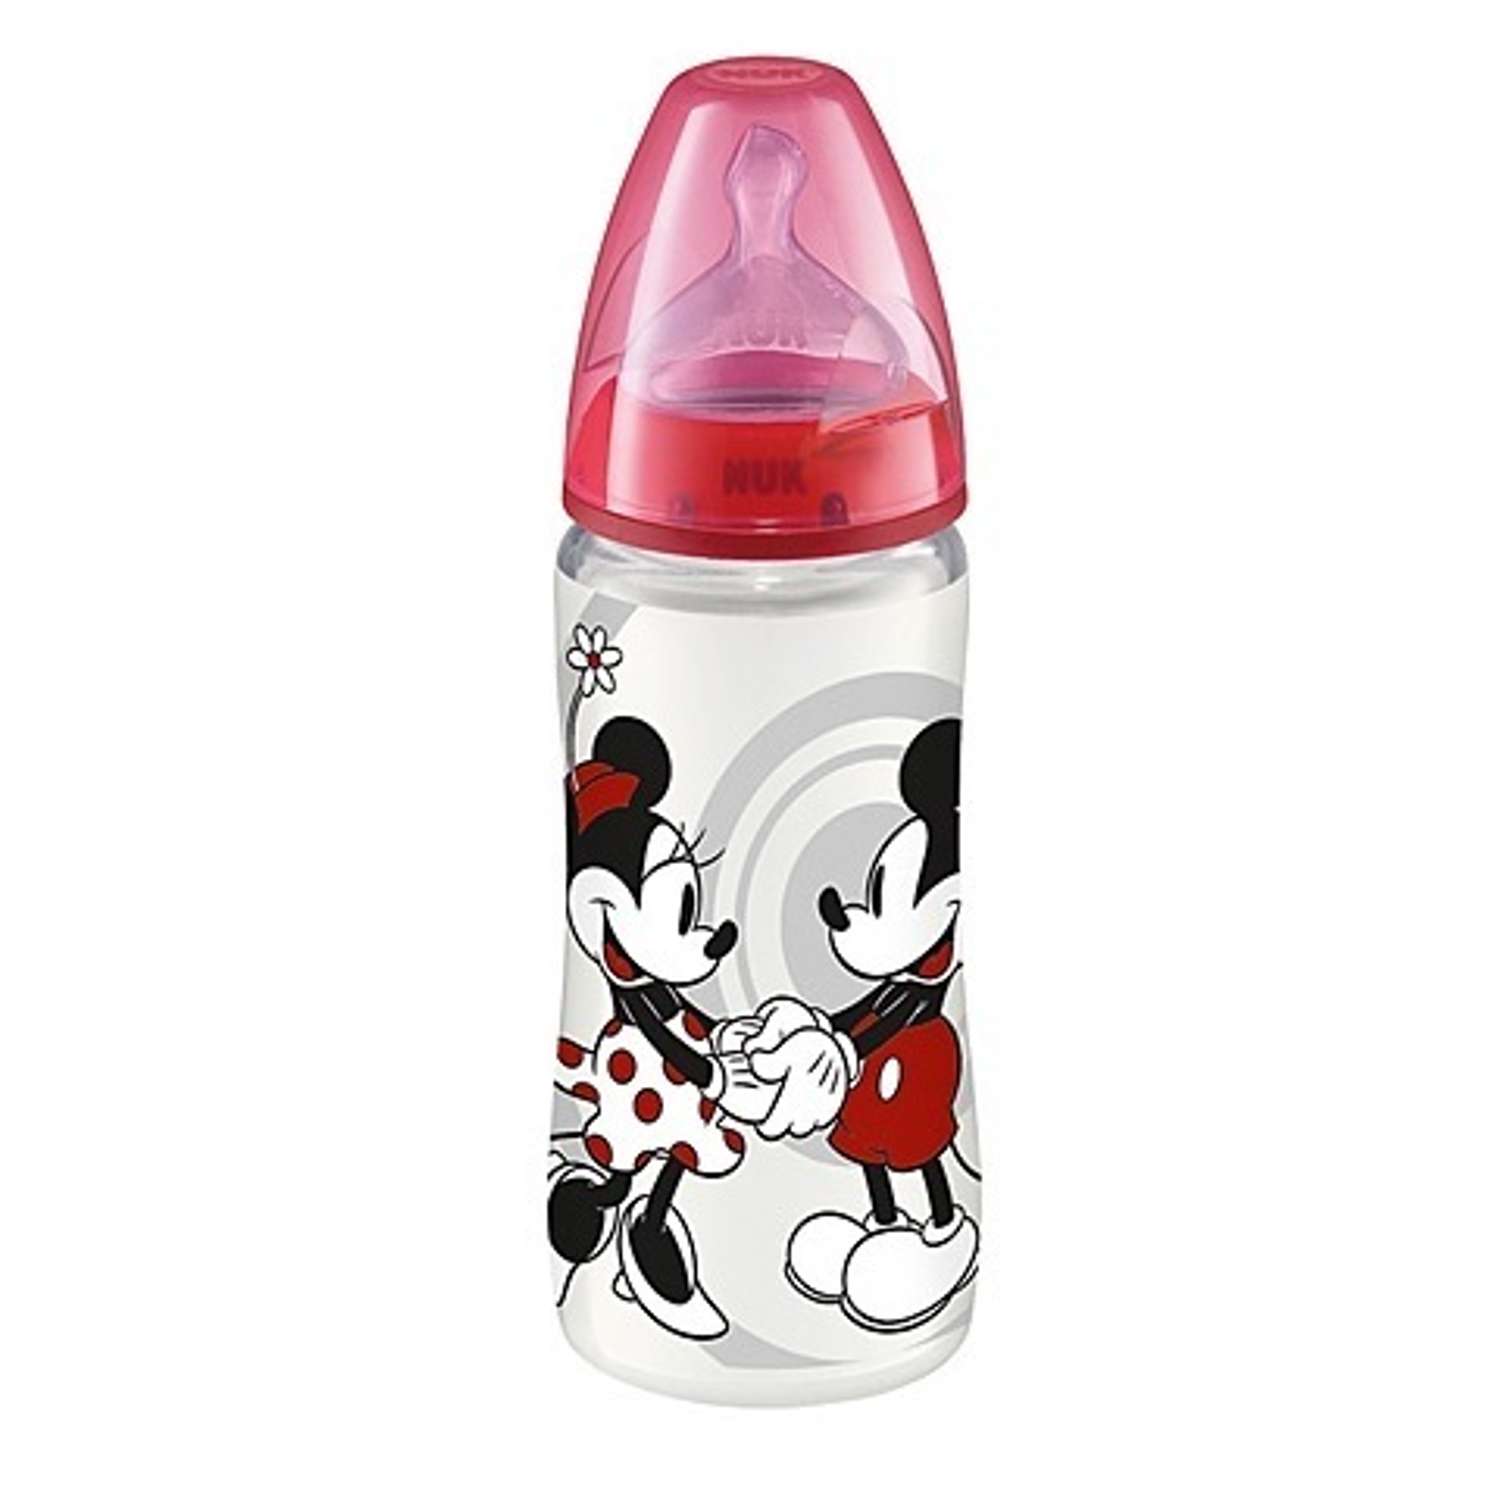 Бутылочка пластиковая Nuk Disney Микки 300 мл + соска силикон 6 мес+ в ассортименте - фото 2